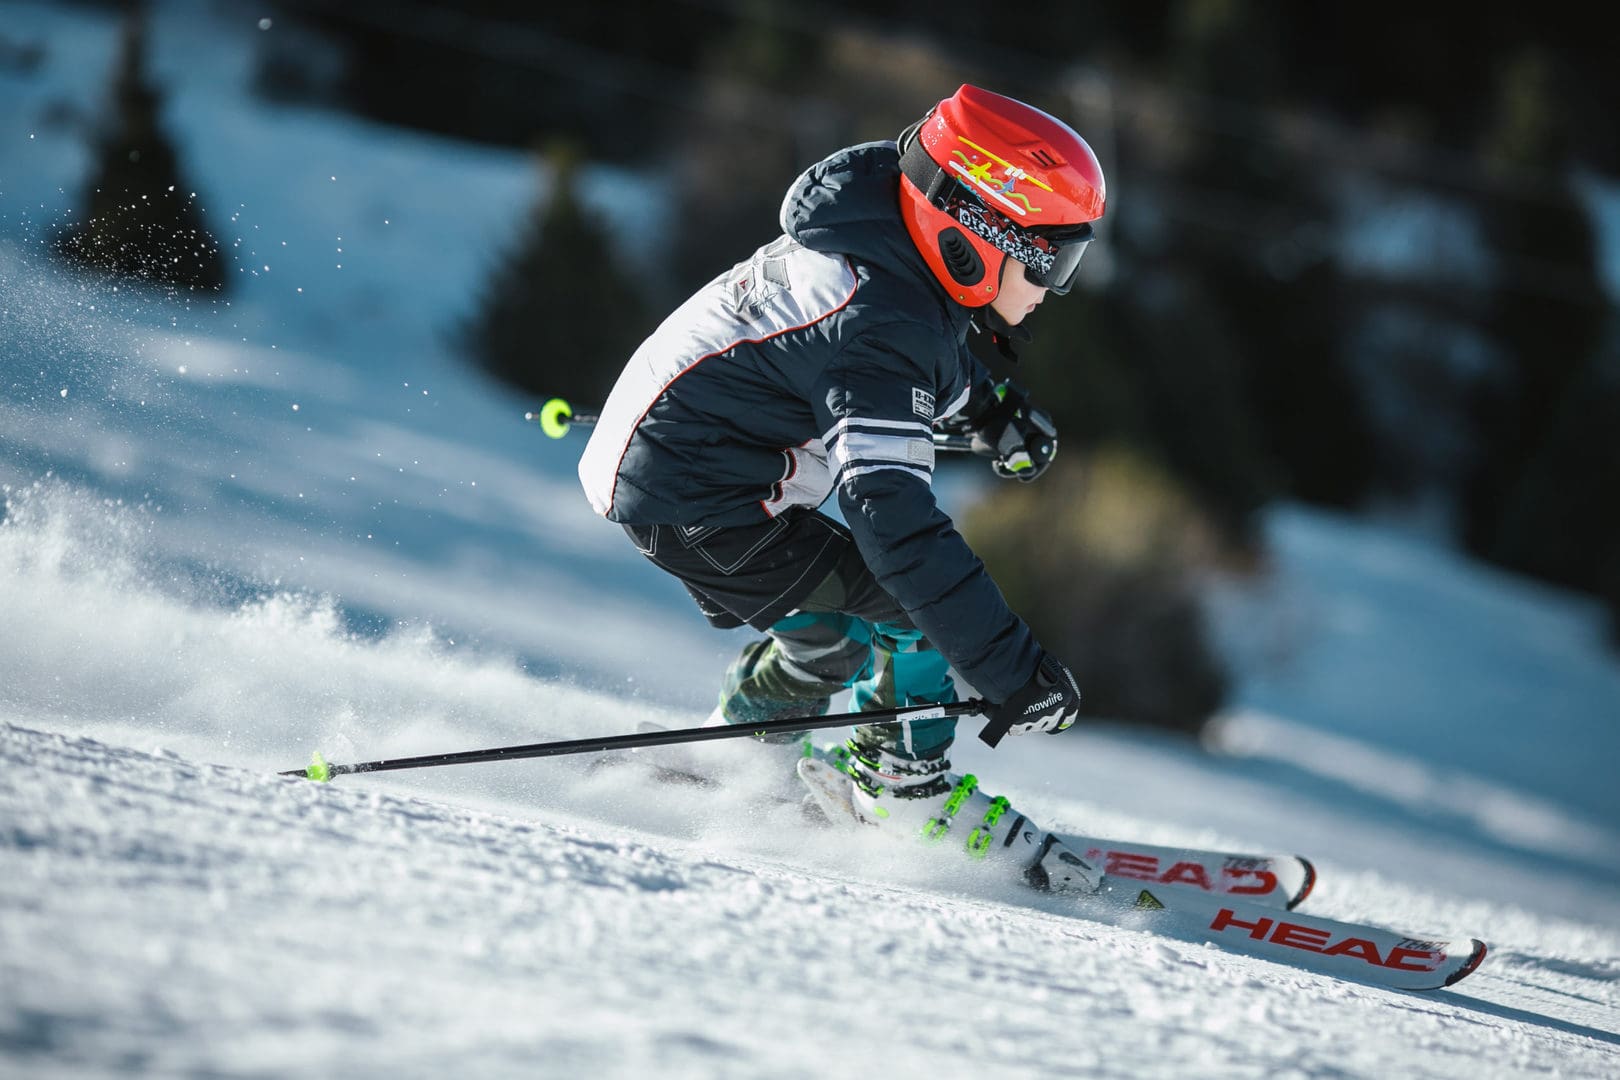 Bambini che sciano nella skiarea di livigno